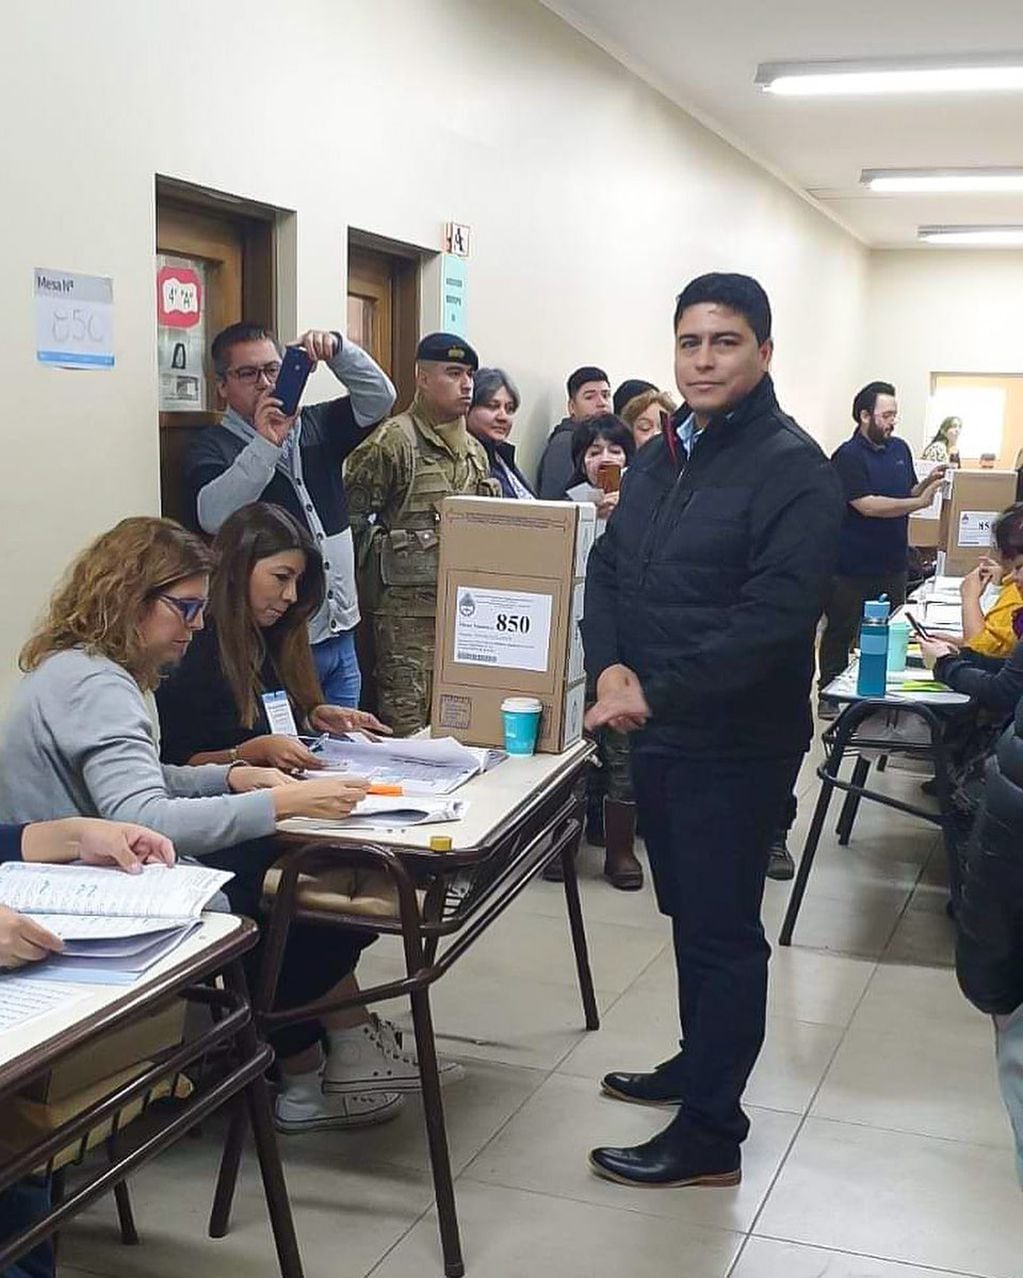 Ayer en Santa Cruz, Claudio Vida eligió votar por la tarde.